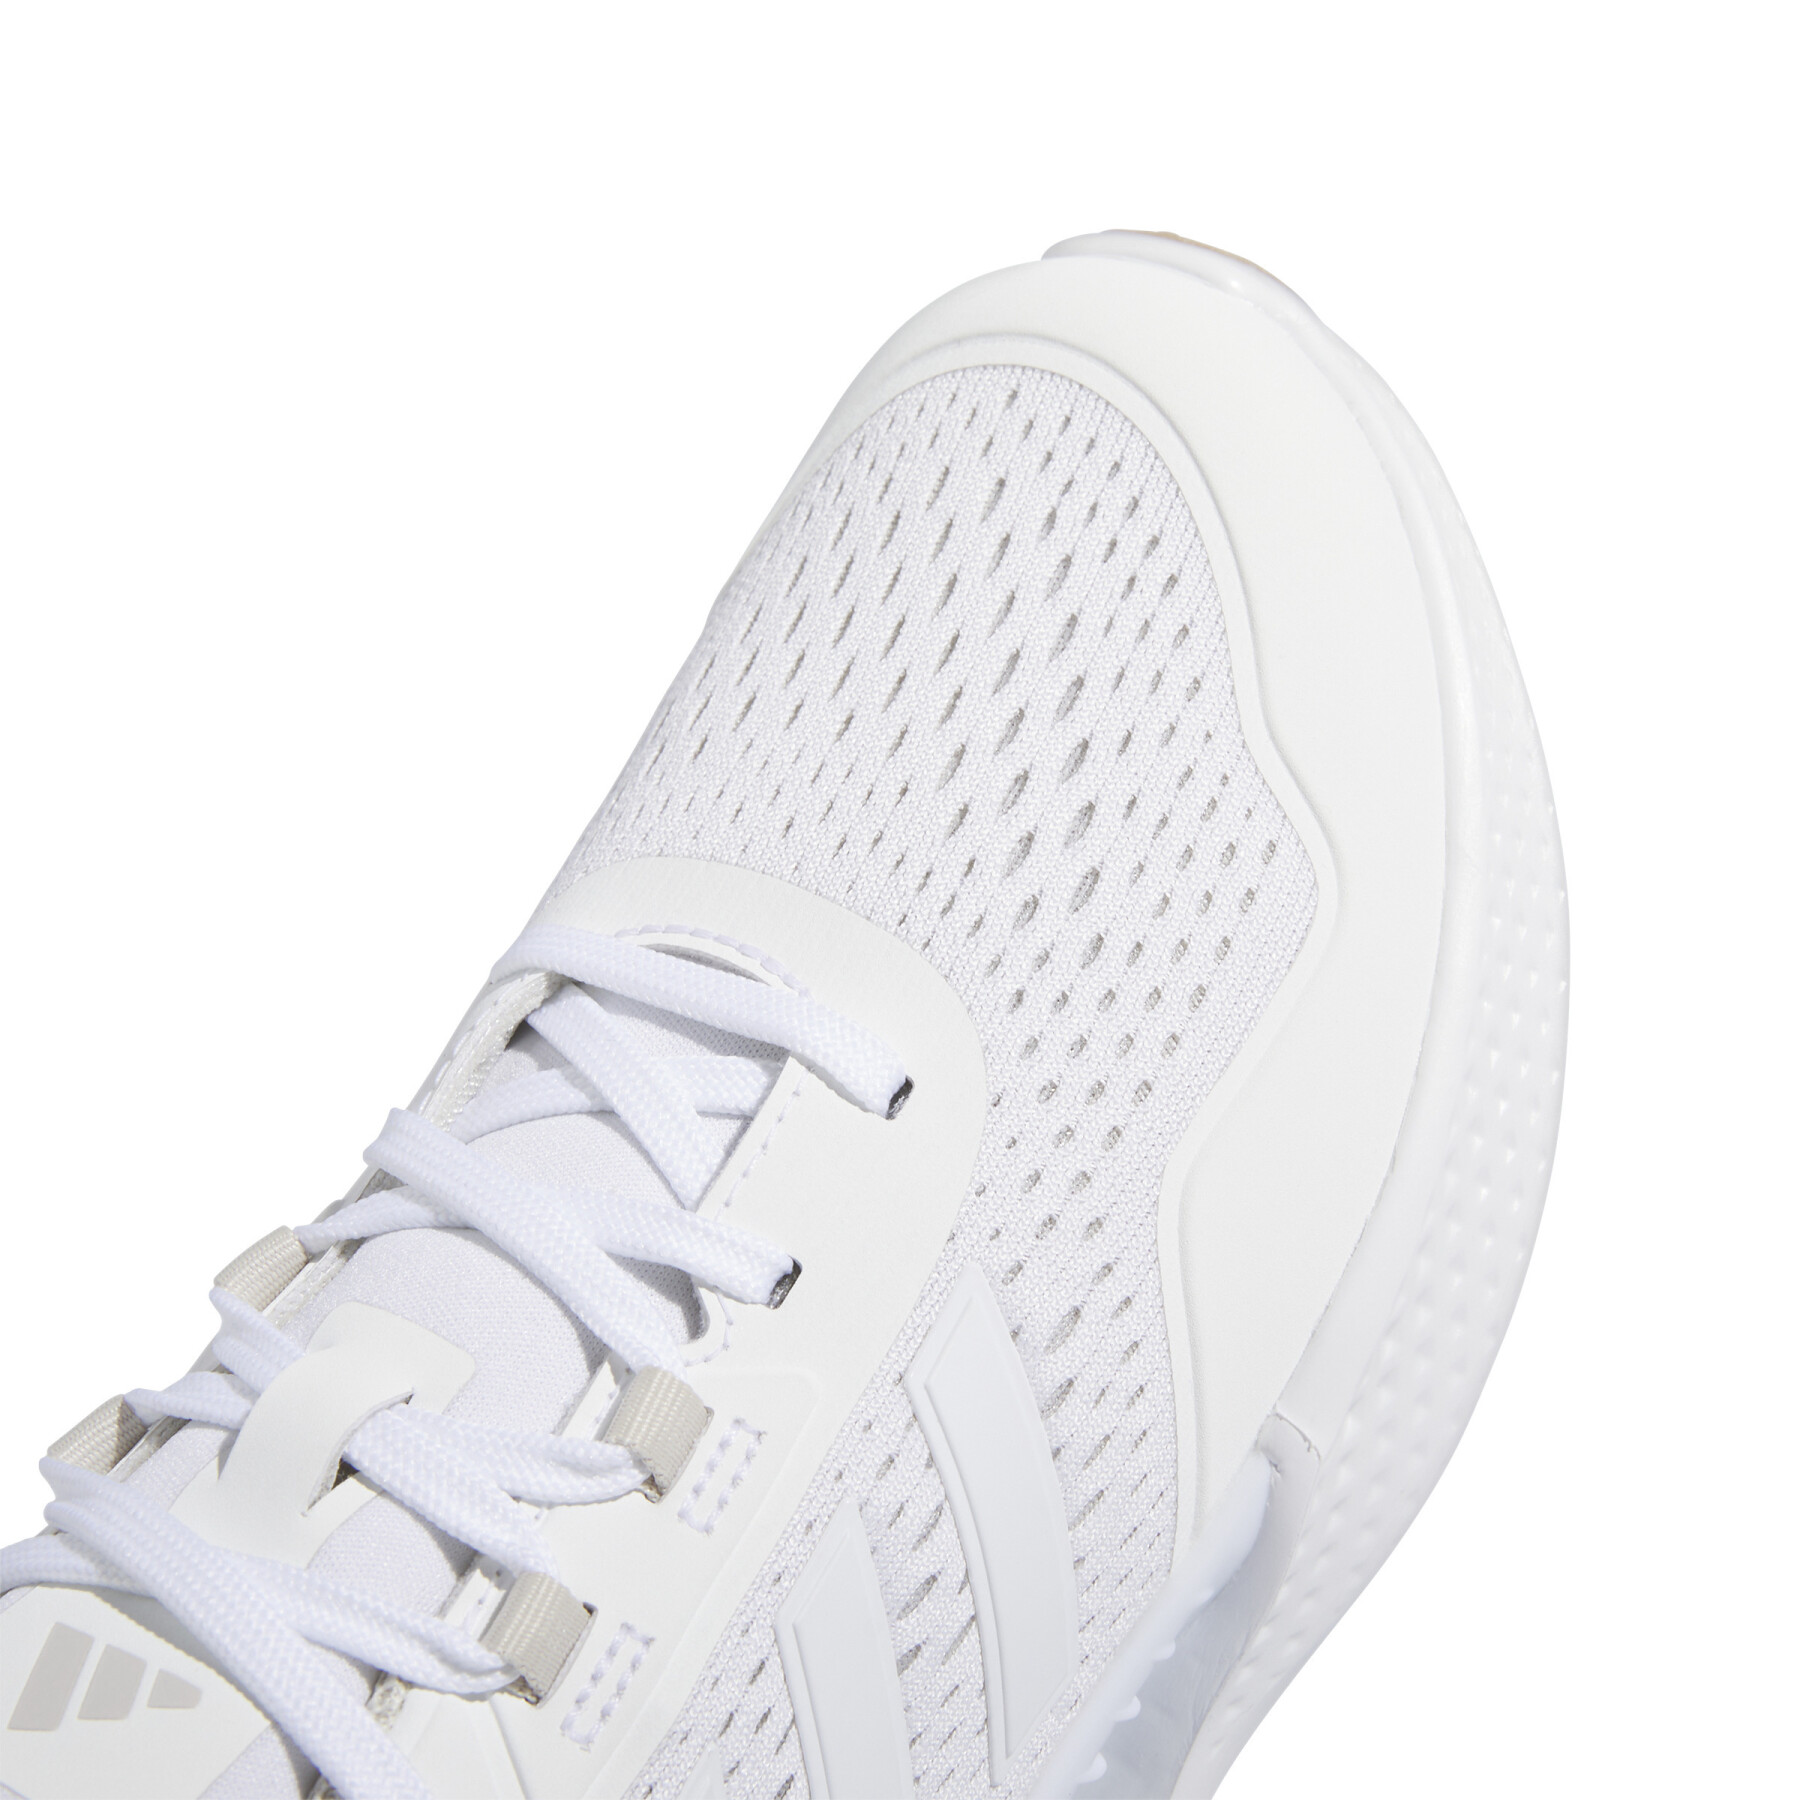 Women's spikeless golf shoes adidas Summervent 24